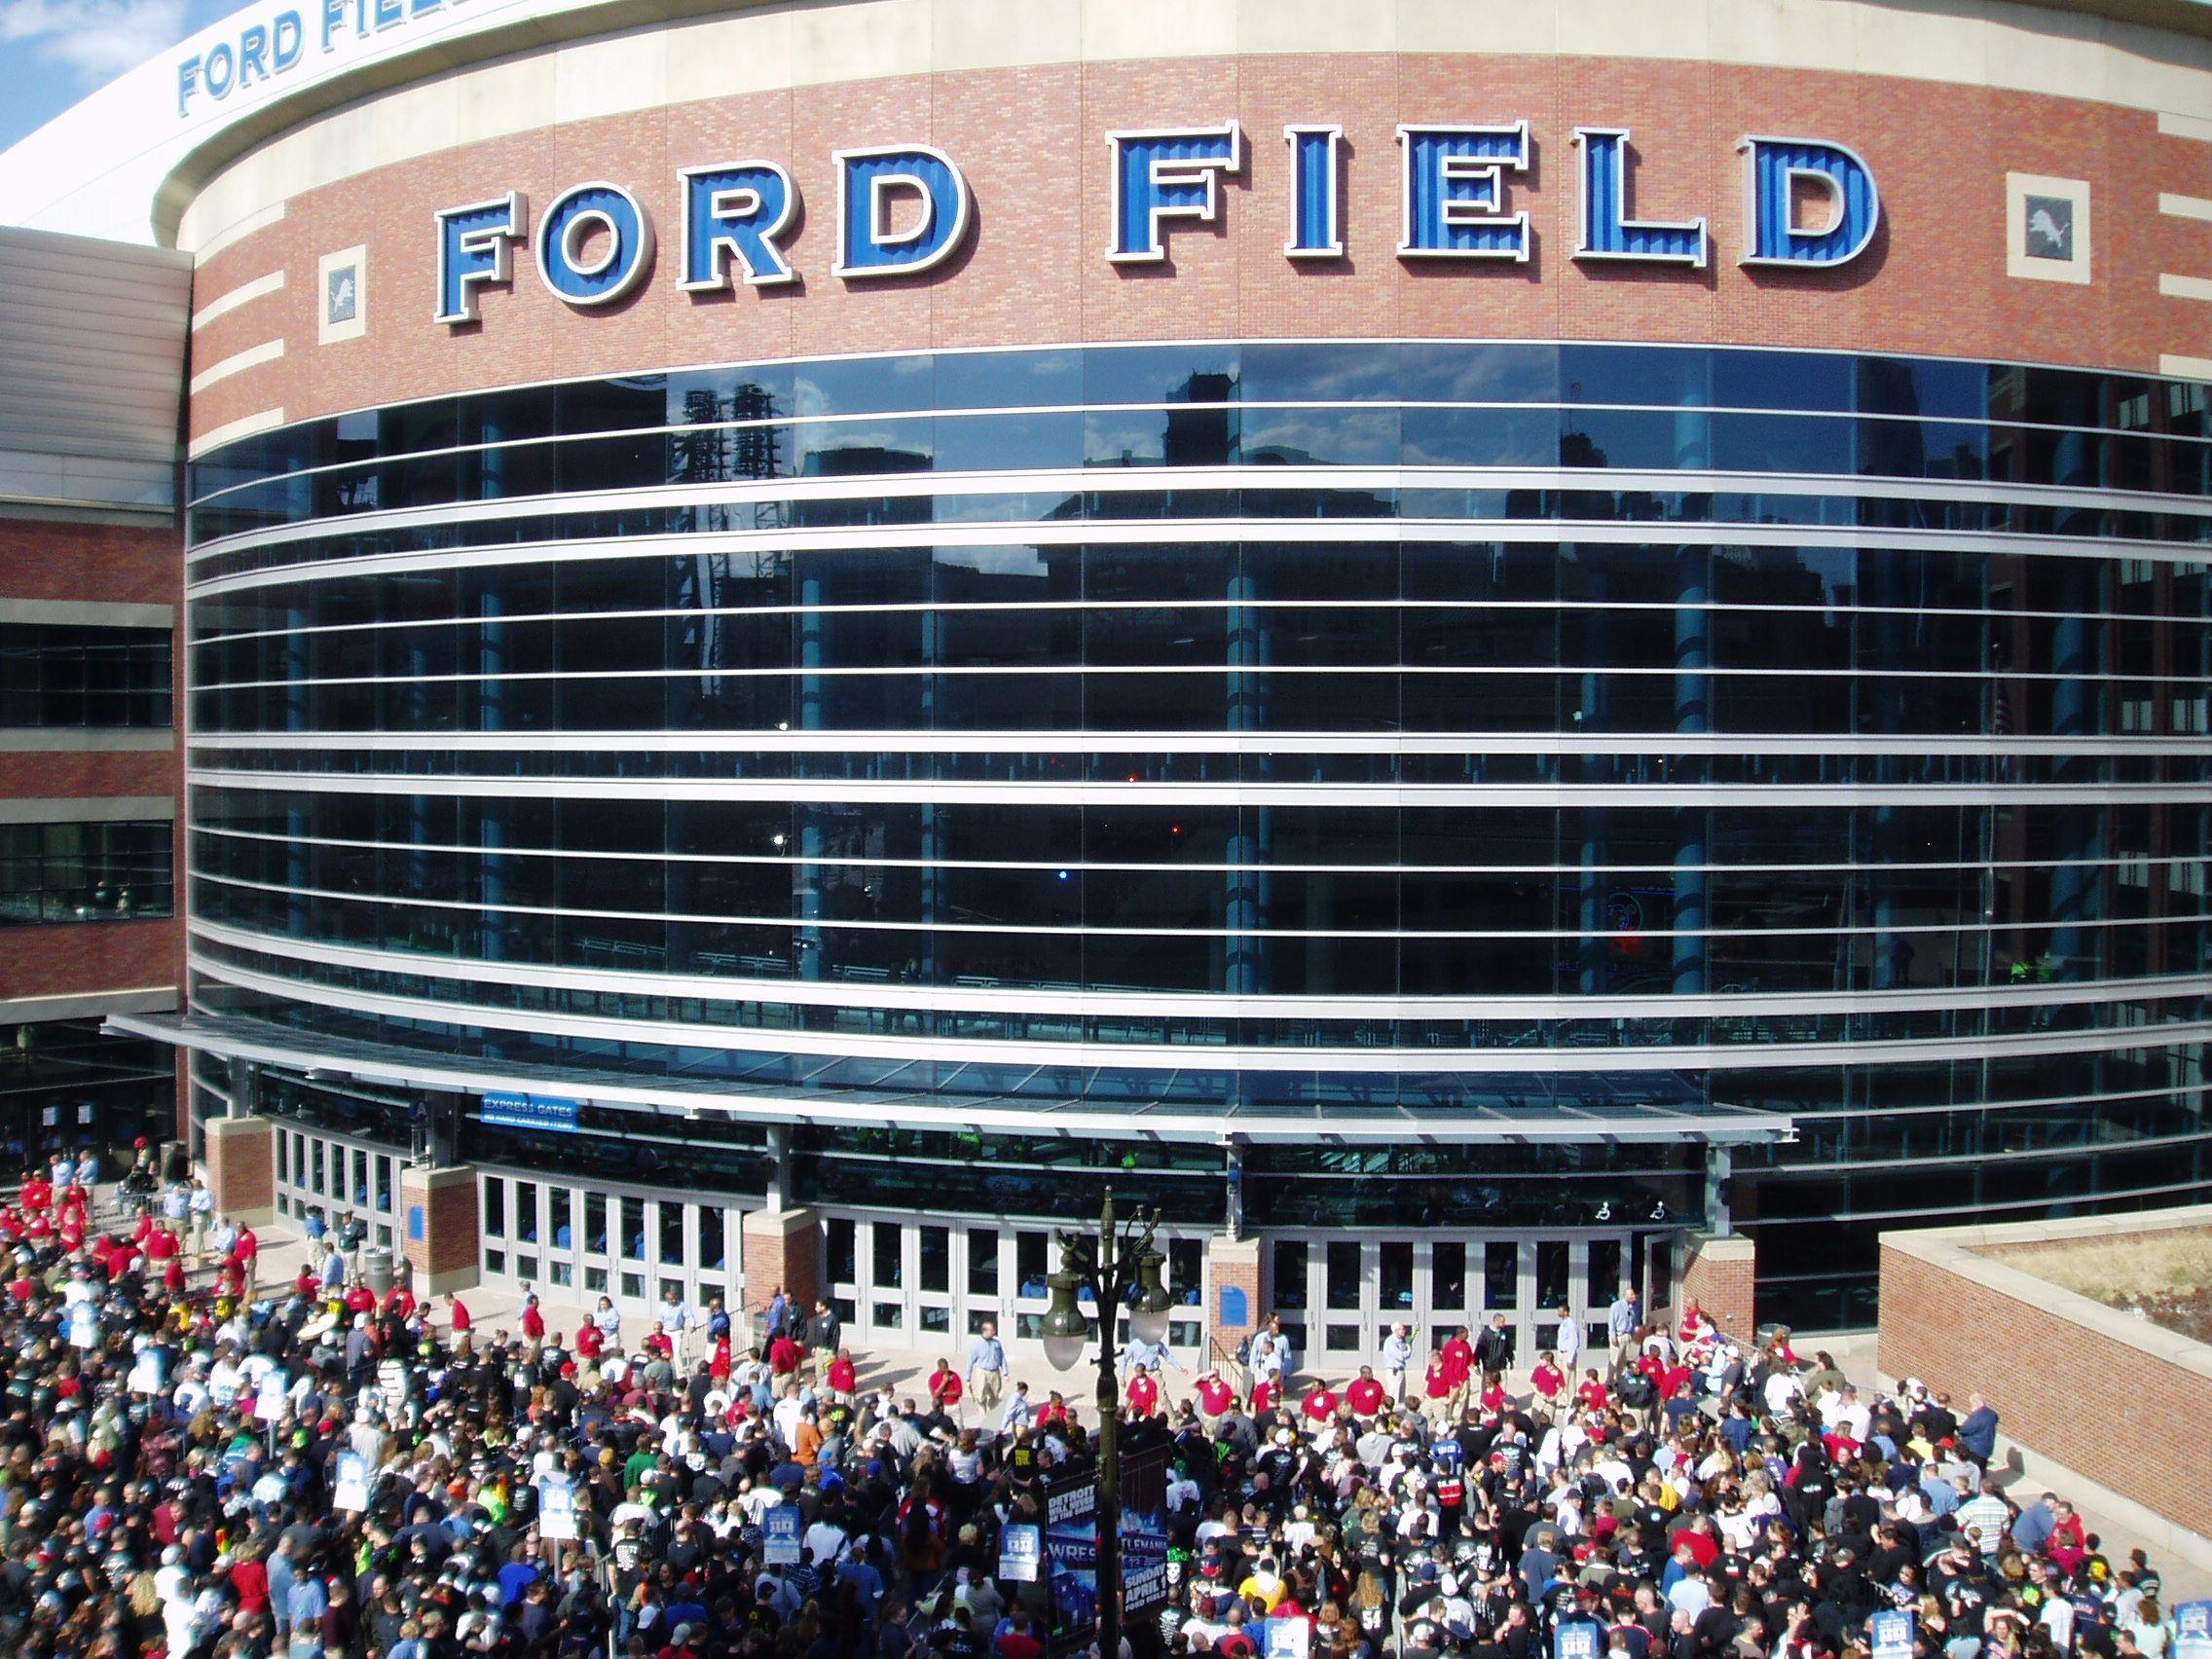 Ford Field Logo - RESTORE THE ROAR